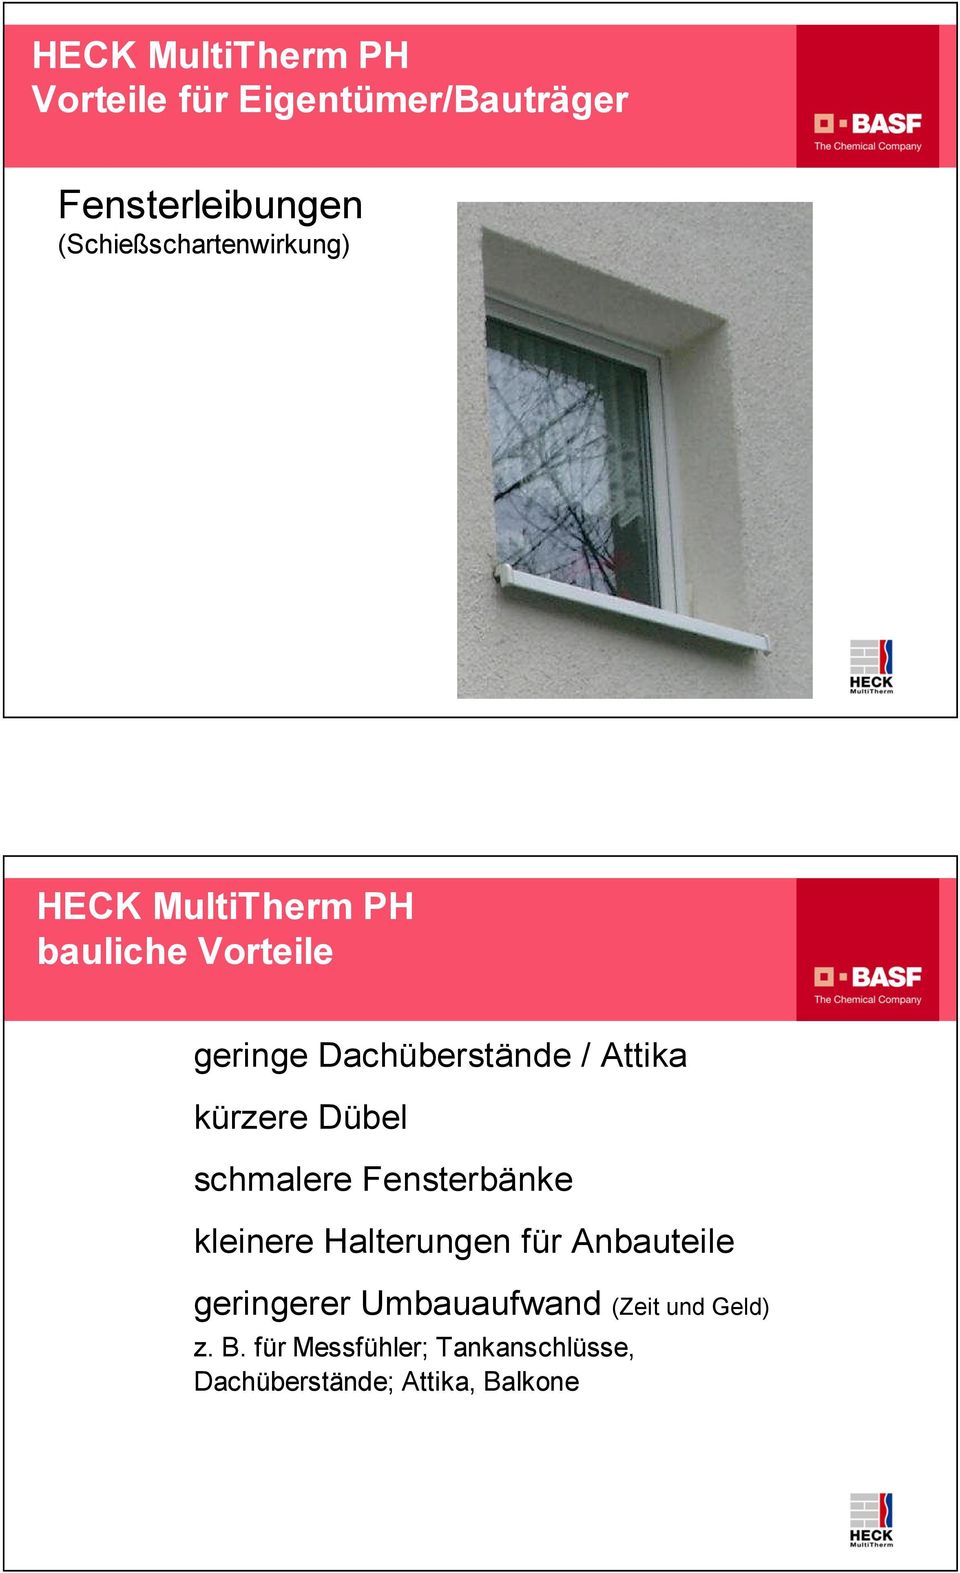 Fensterbänke kleinere Halterungen für Anbauteile geringerer Umbauaufwand (Zeit